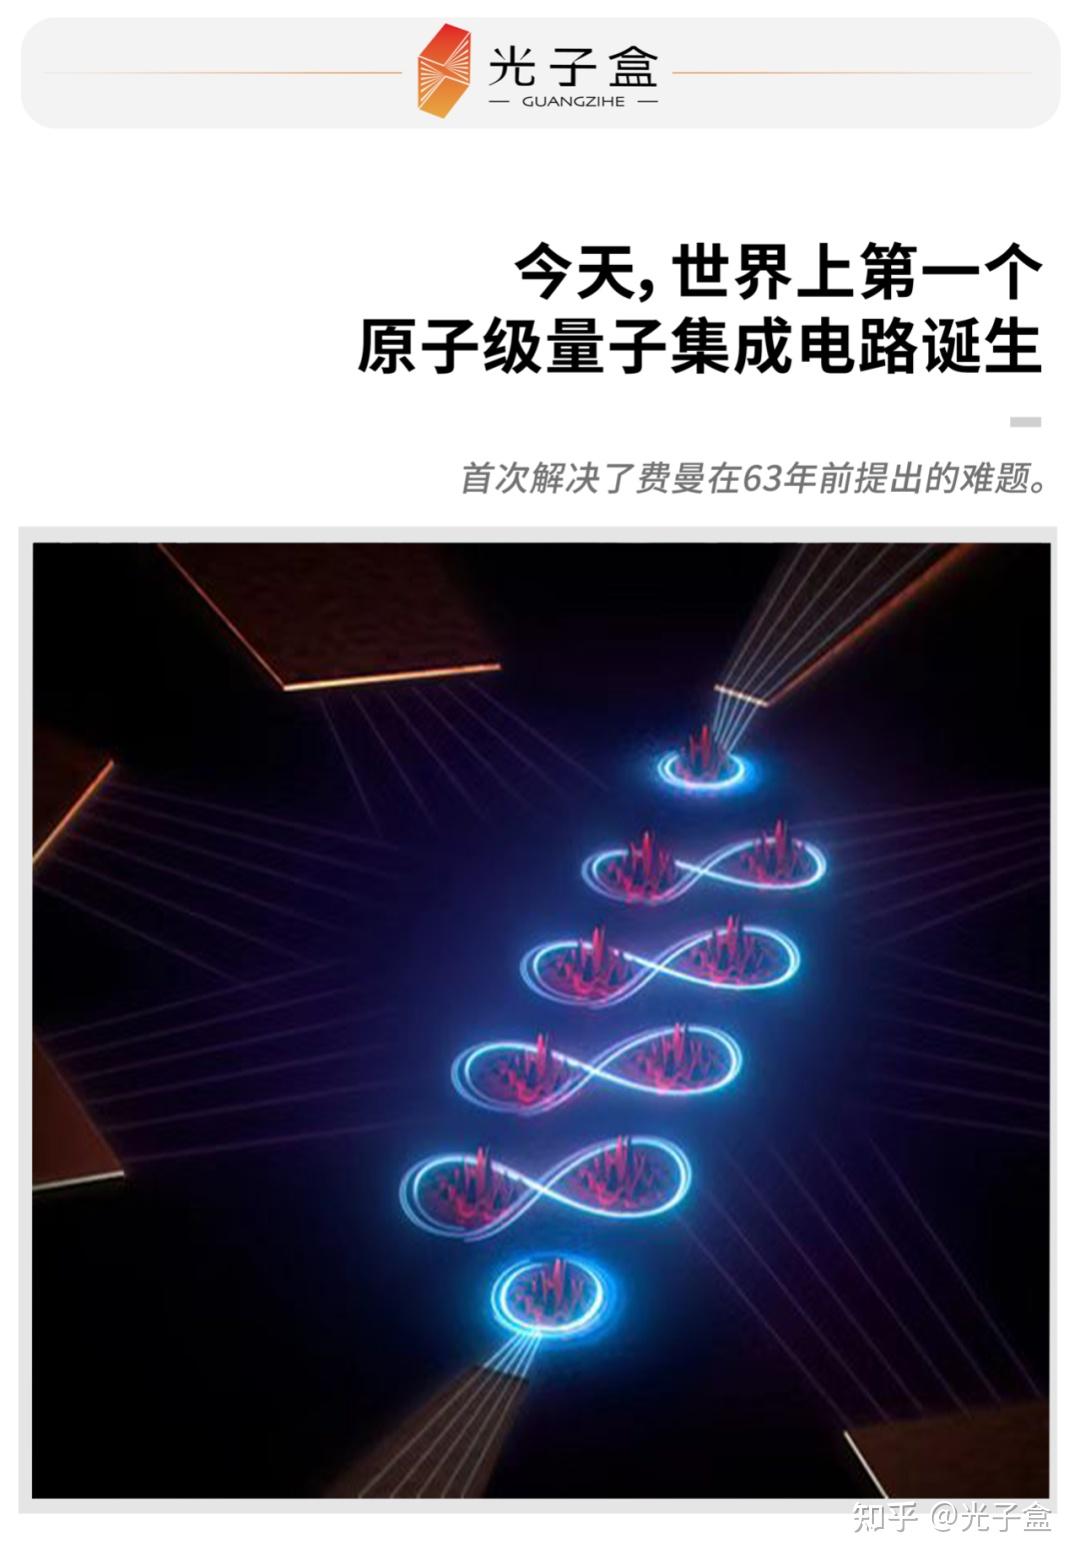 中国科研团队研制成功“量子芯片激光手术刀”-侨报网